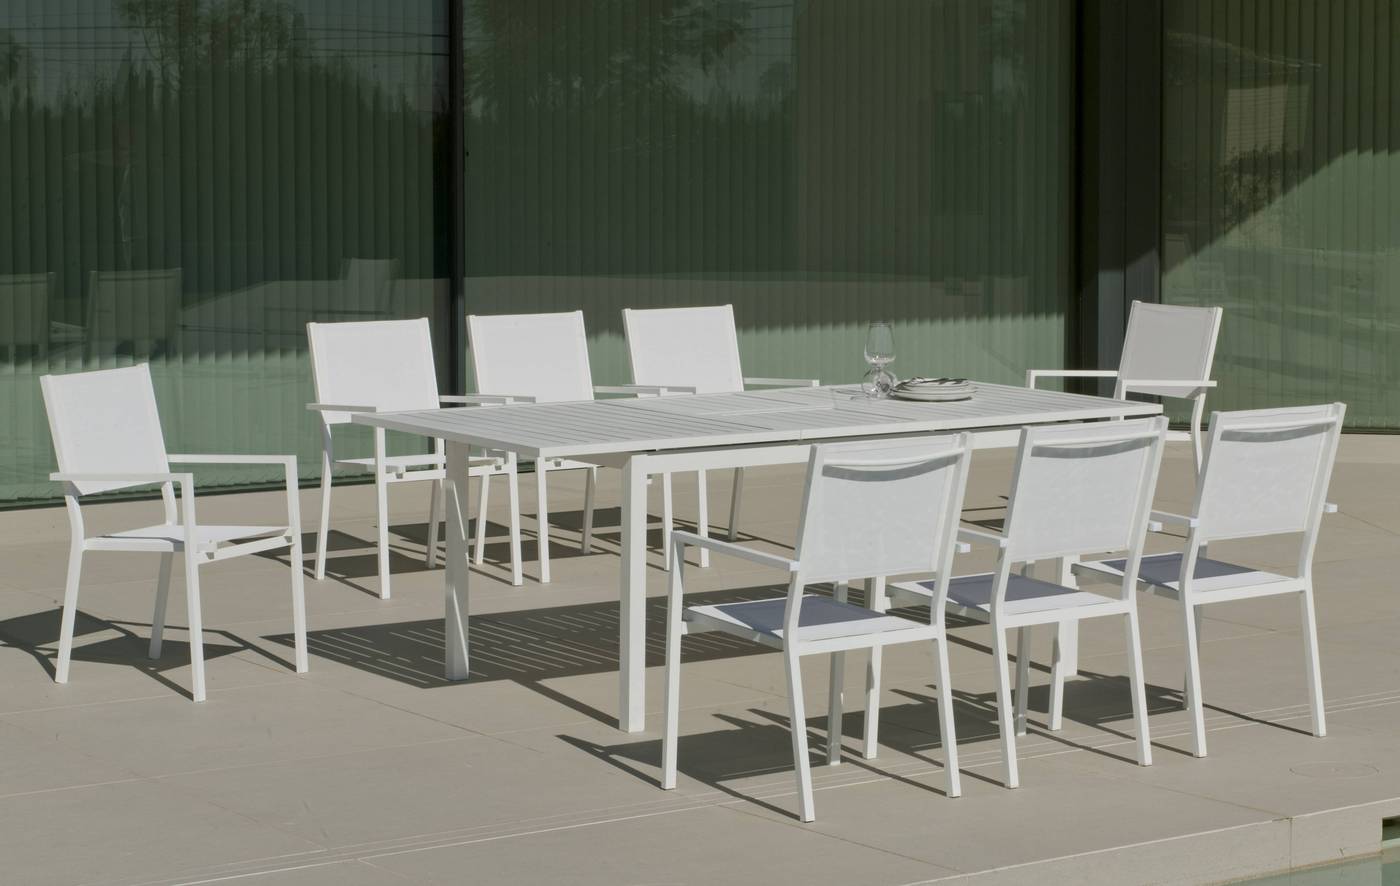 Set Aluminio PalmaExt-Córcega 220-8 - Conjunto de aluminio luxe: mesa extensible 170-220 cm. + 8 sillones de textilen. Disponible en color blanco, plata, bronce, antracita o champagne.